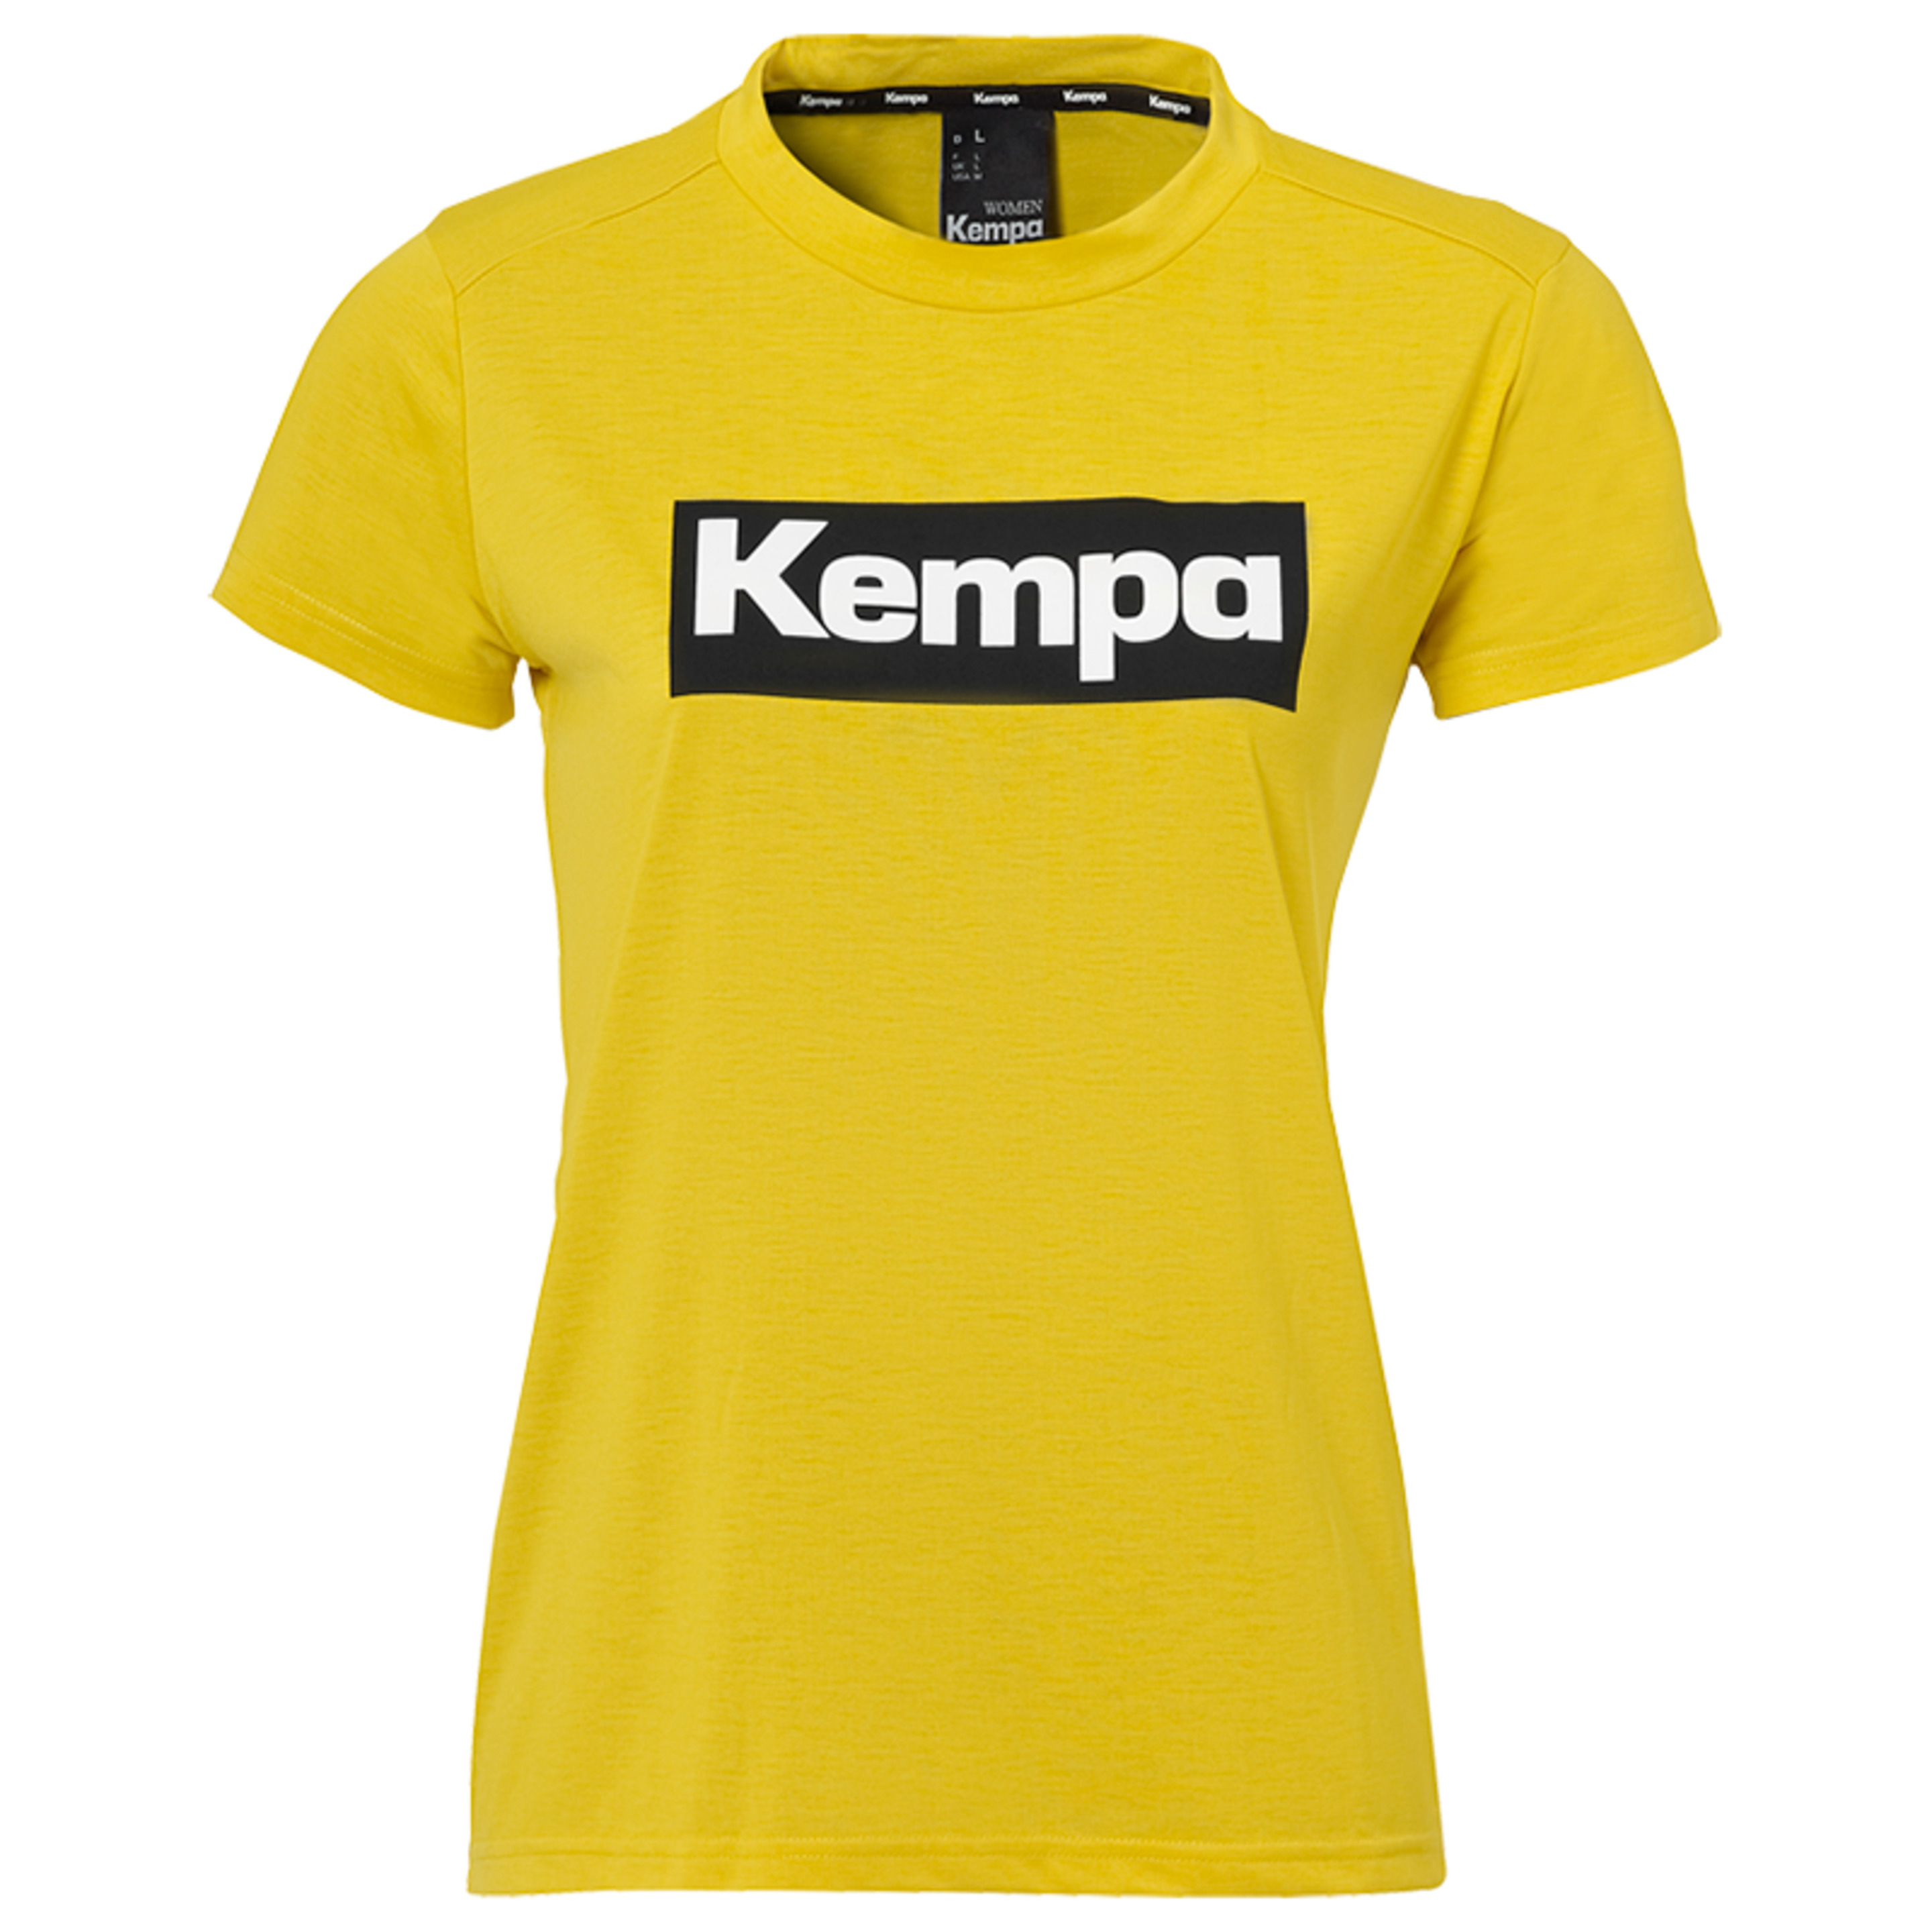 Laganda T-shirt Women Mostaza Kempa